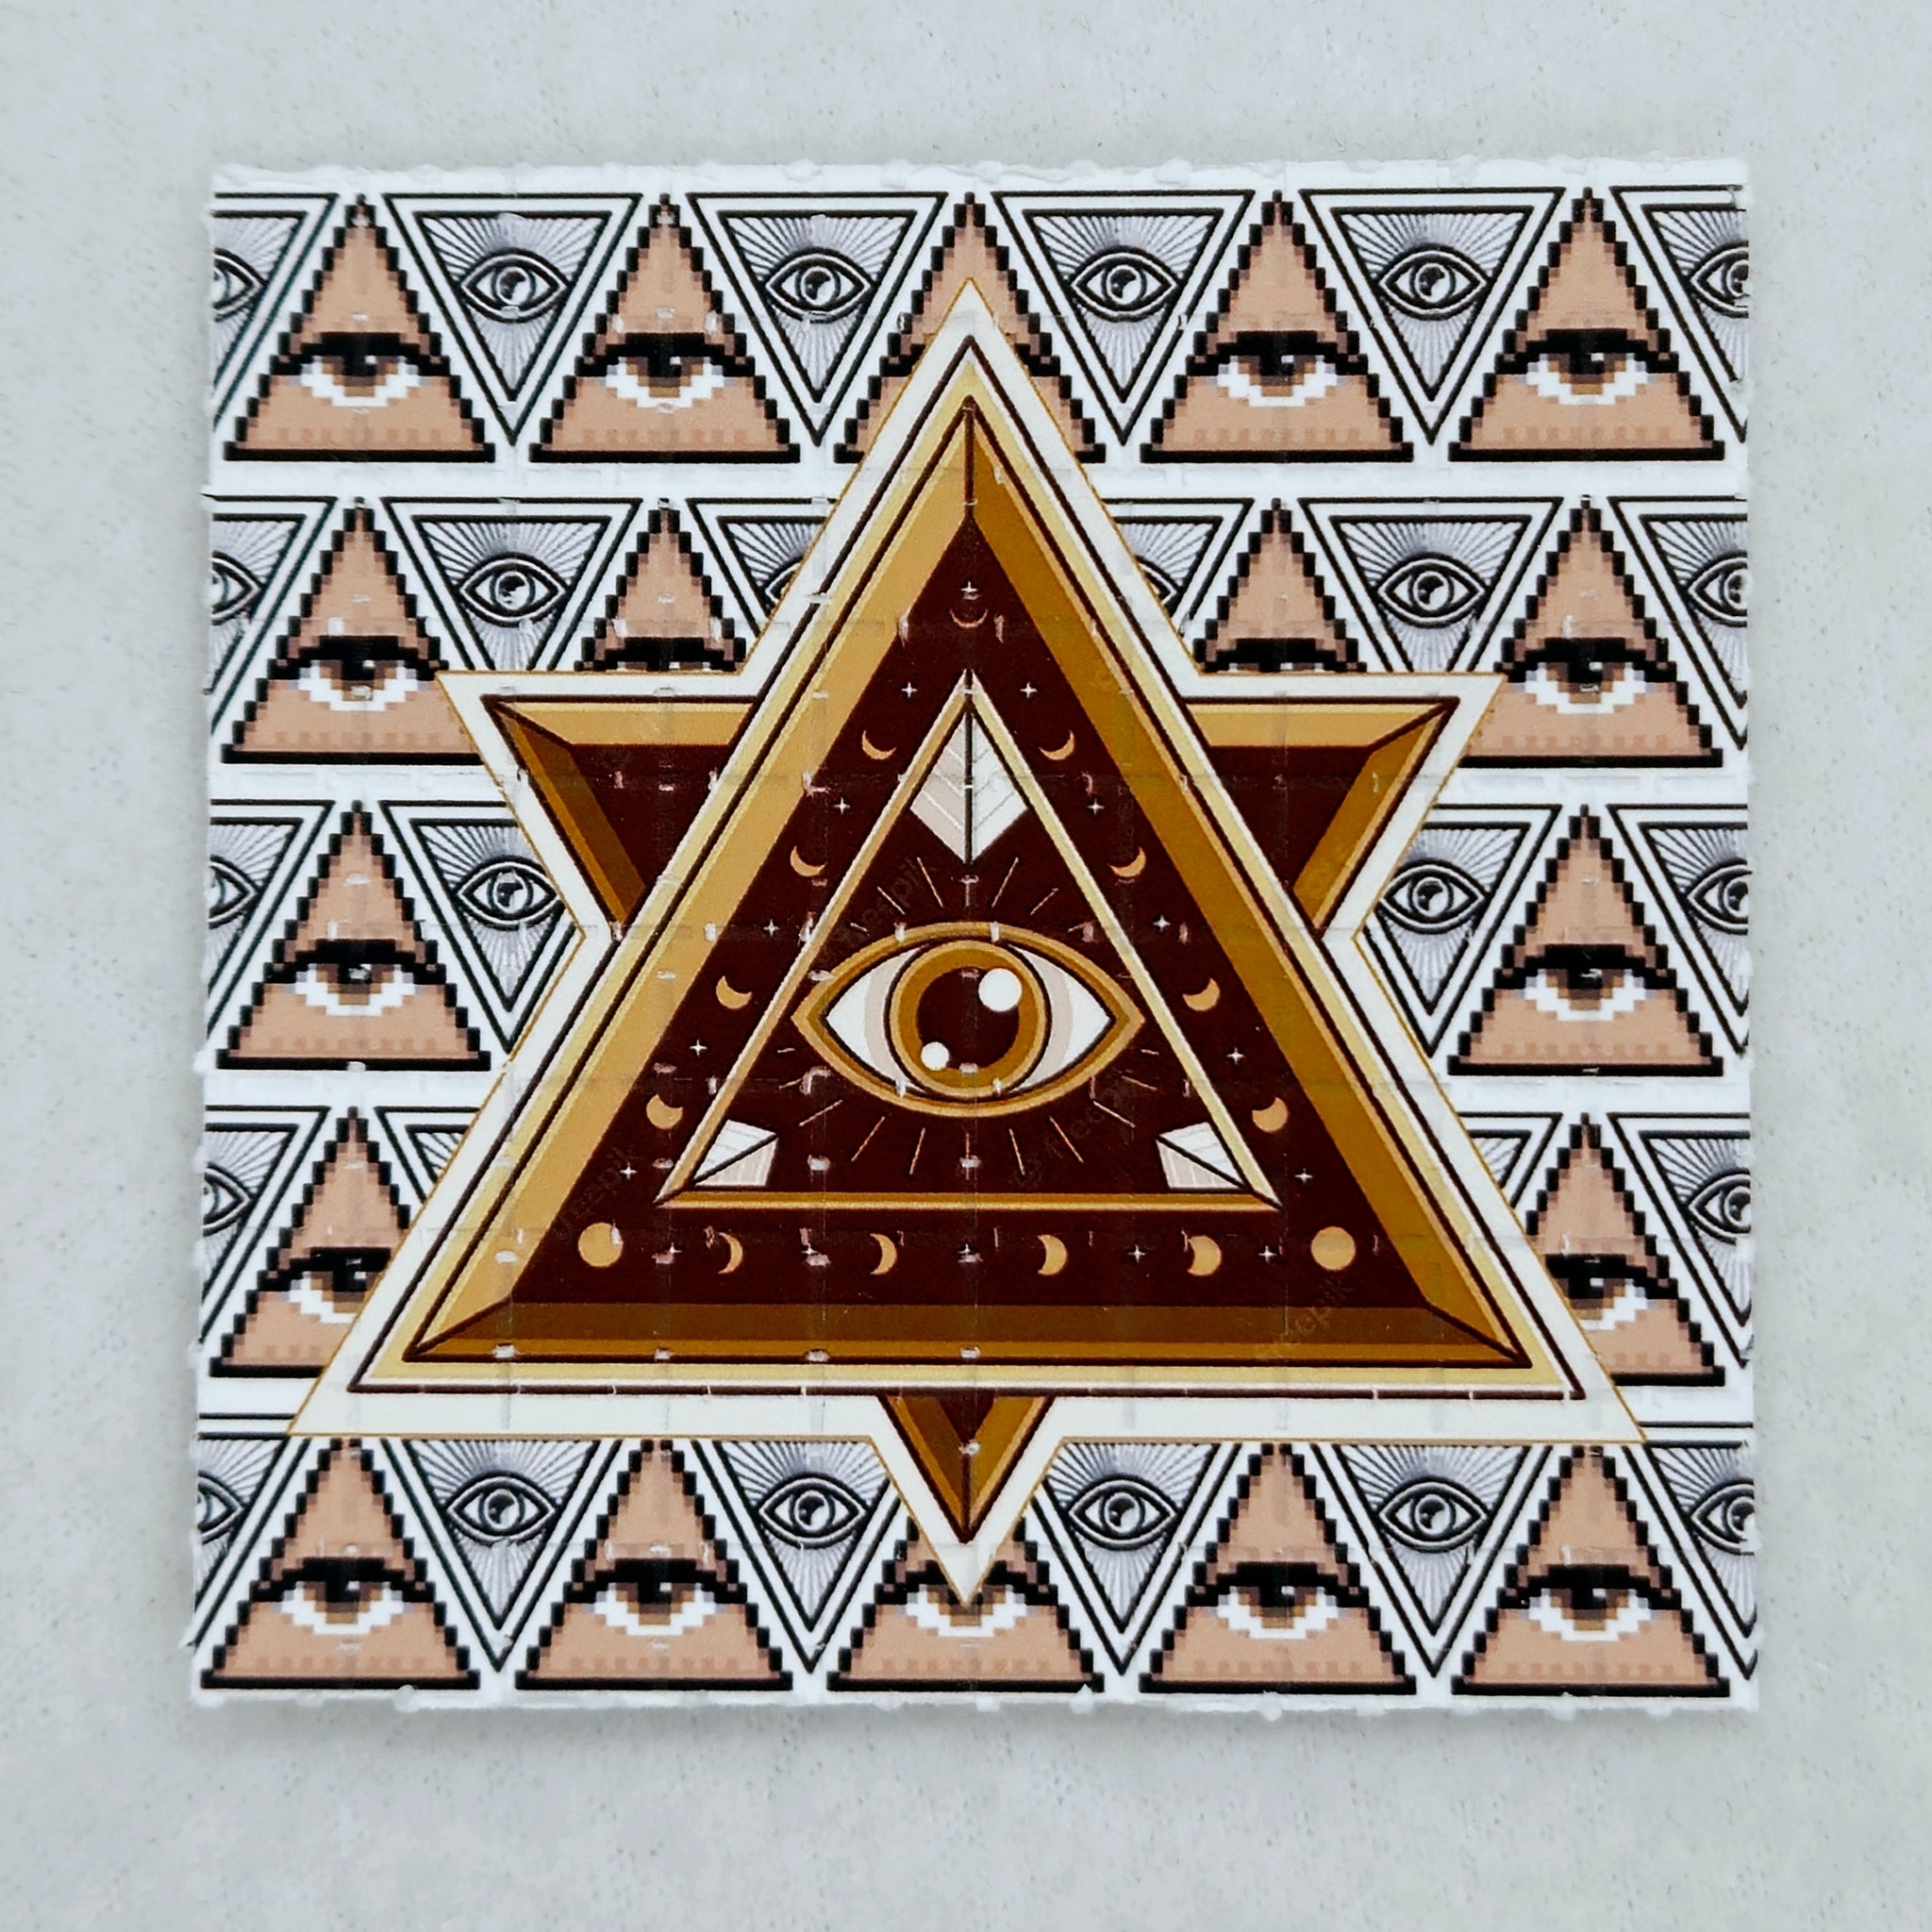 Illuminati Pyramid Blotter Art